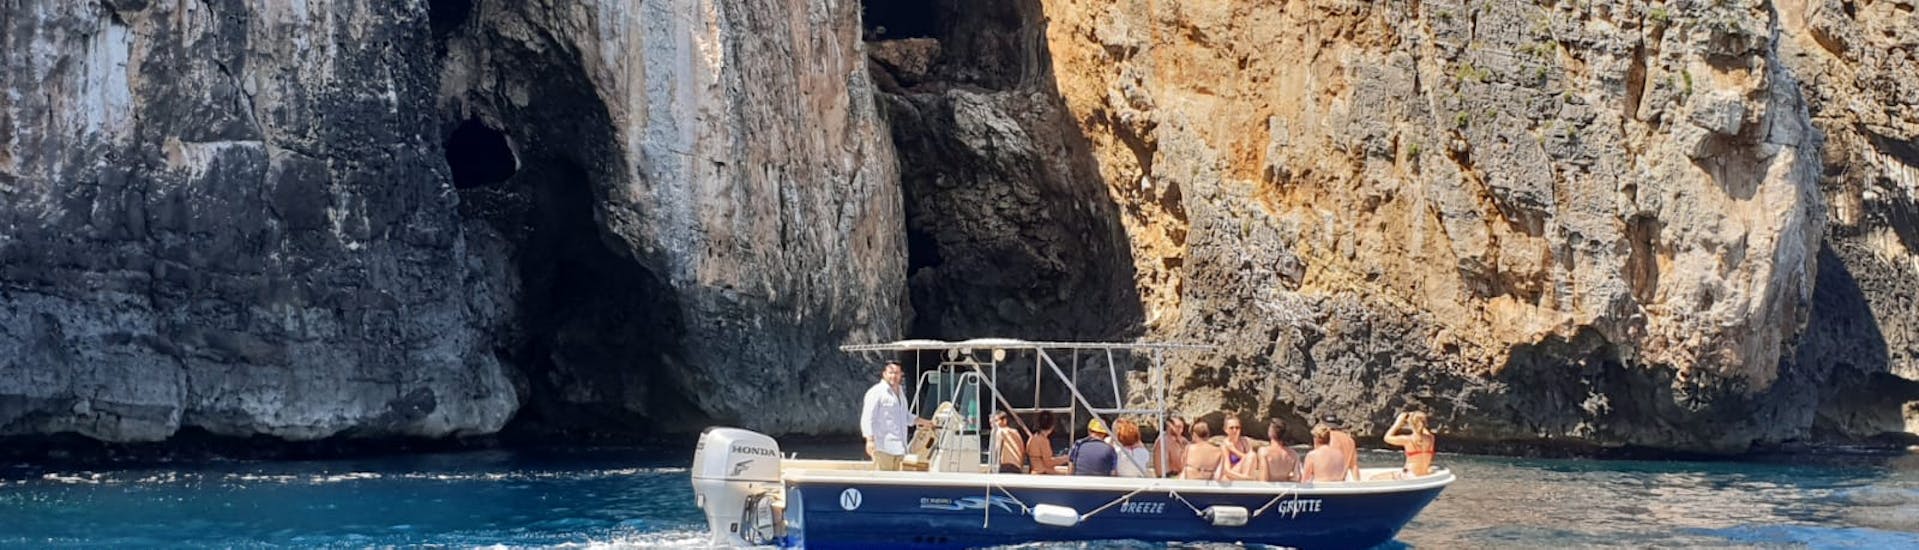 La nostra barca passa davanti alle grotte durante la gita in barca alle Grotte di Santa Maria di Leuca con pranzo.